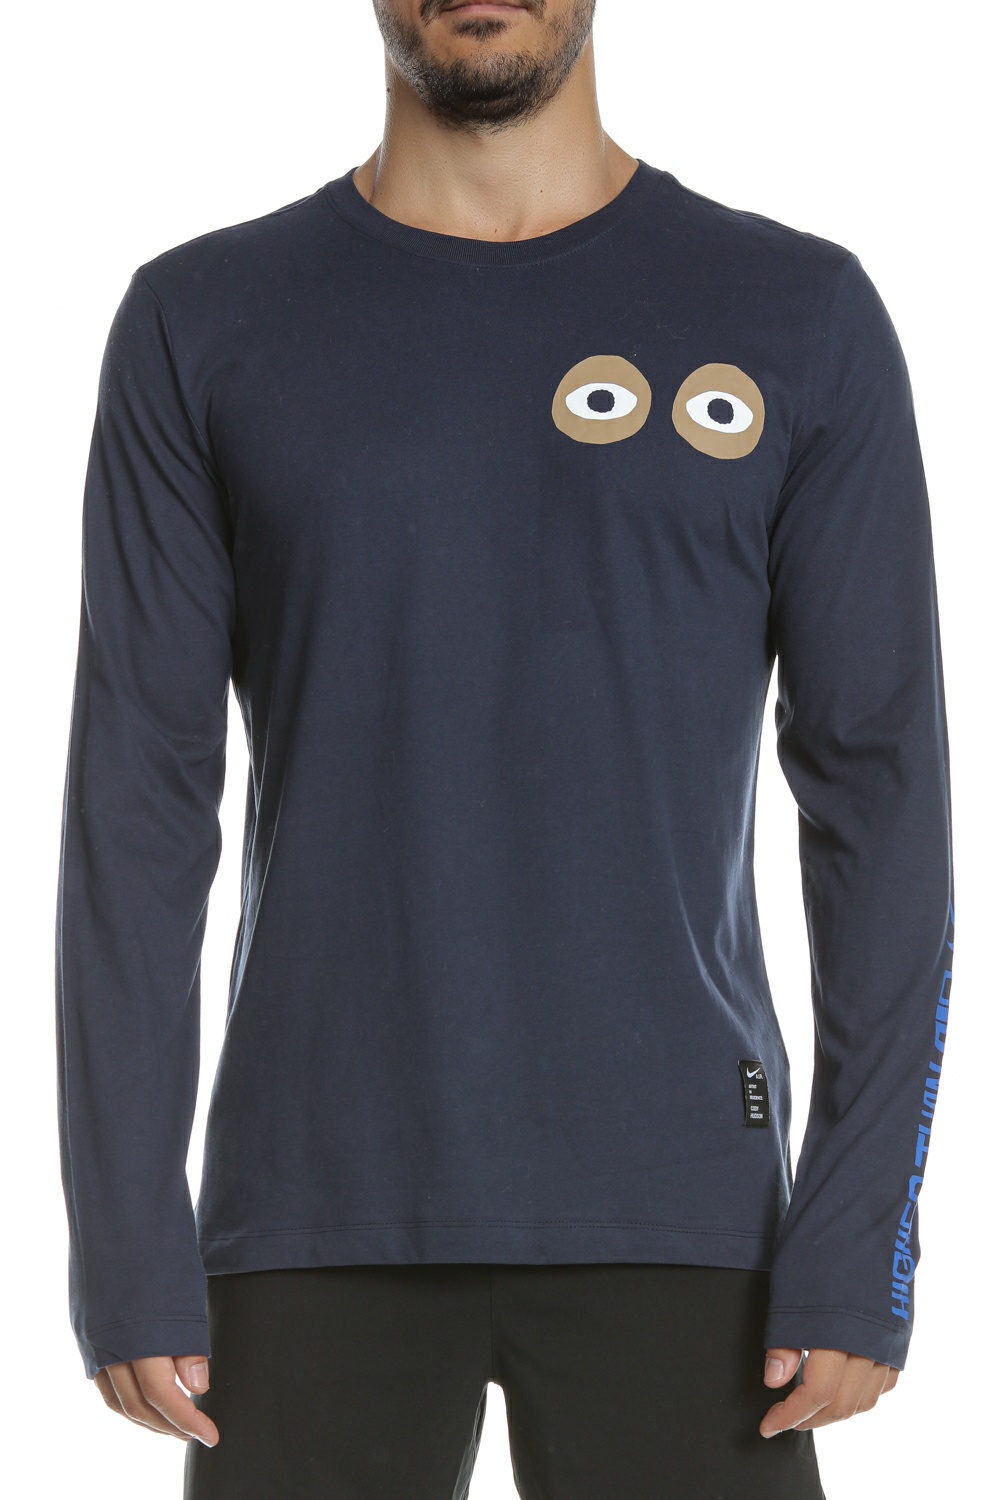 Ανδρικά/Ρούχα/Αθλητικά/Φούτερ-Μακρυμάνικα NIKE - Ανδρική μπλούζα NIKE DRY DFC LS A.I.R. μπλε